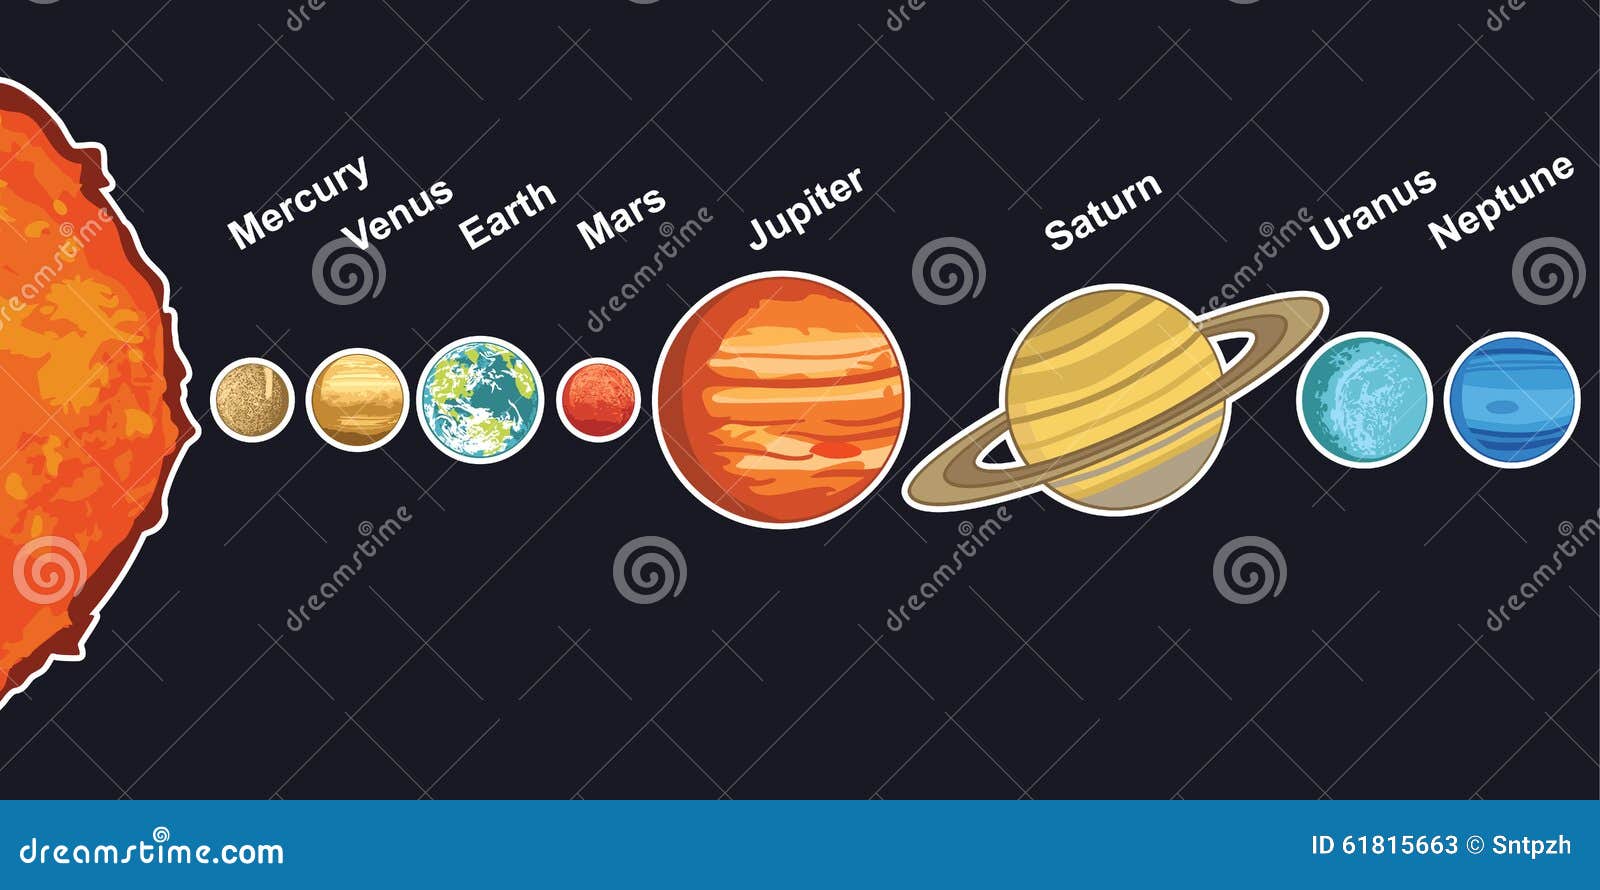 rotation des planetes autour du soleil